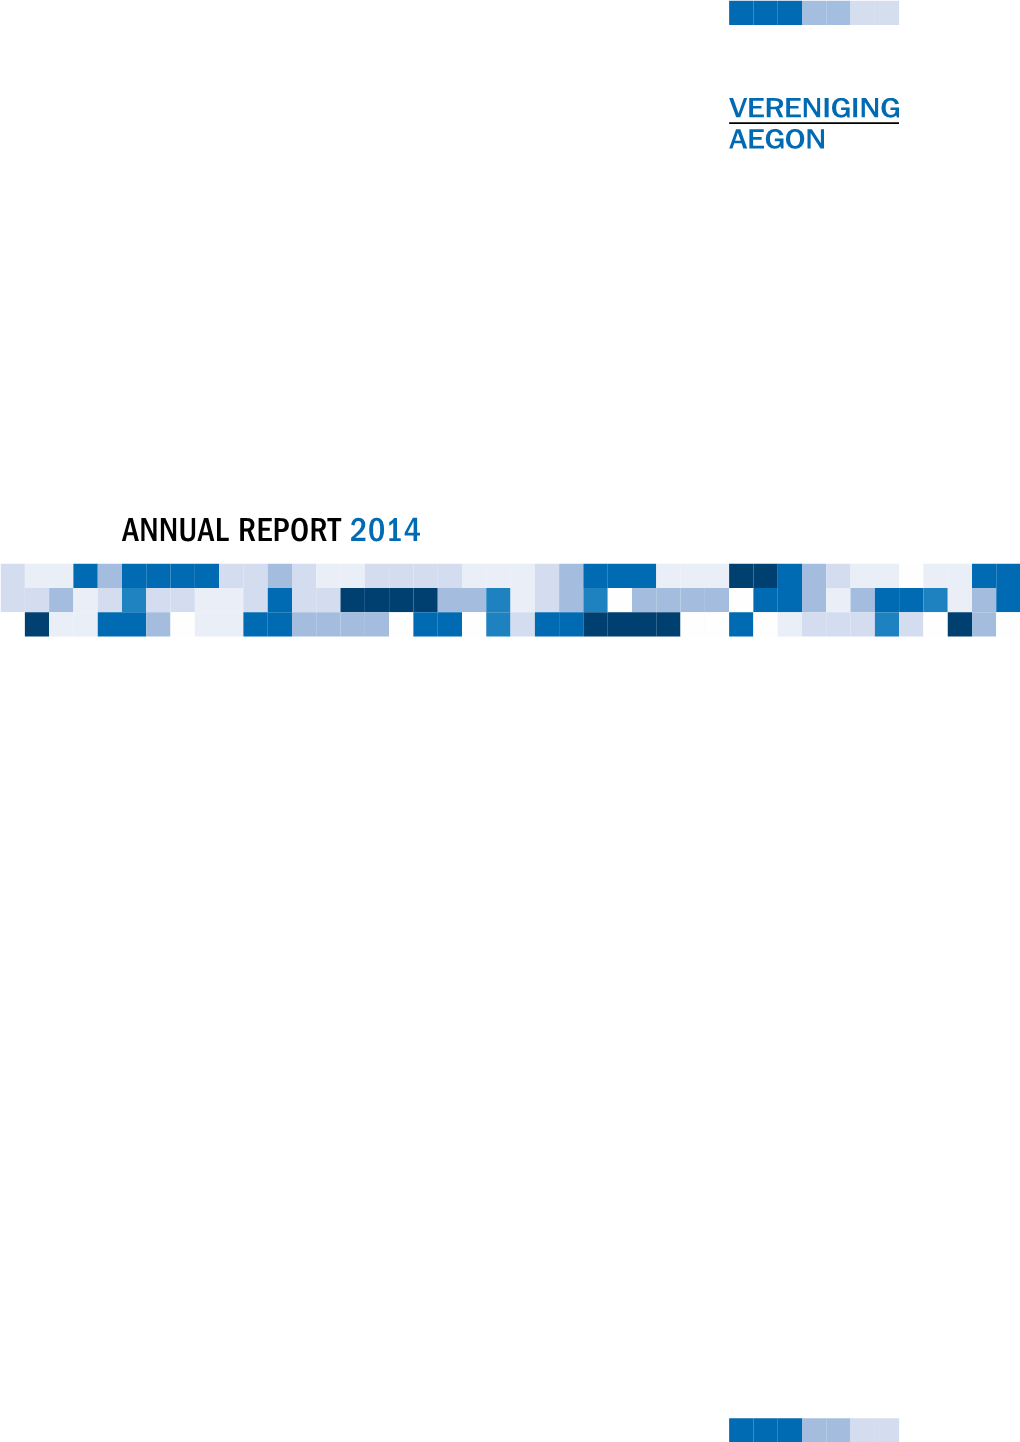 Vereniging Aegon Annual Report 2014